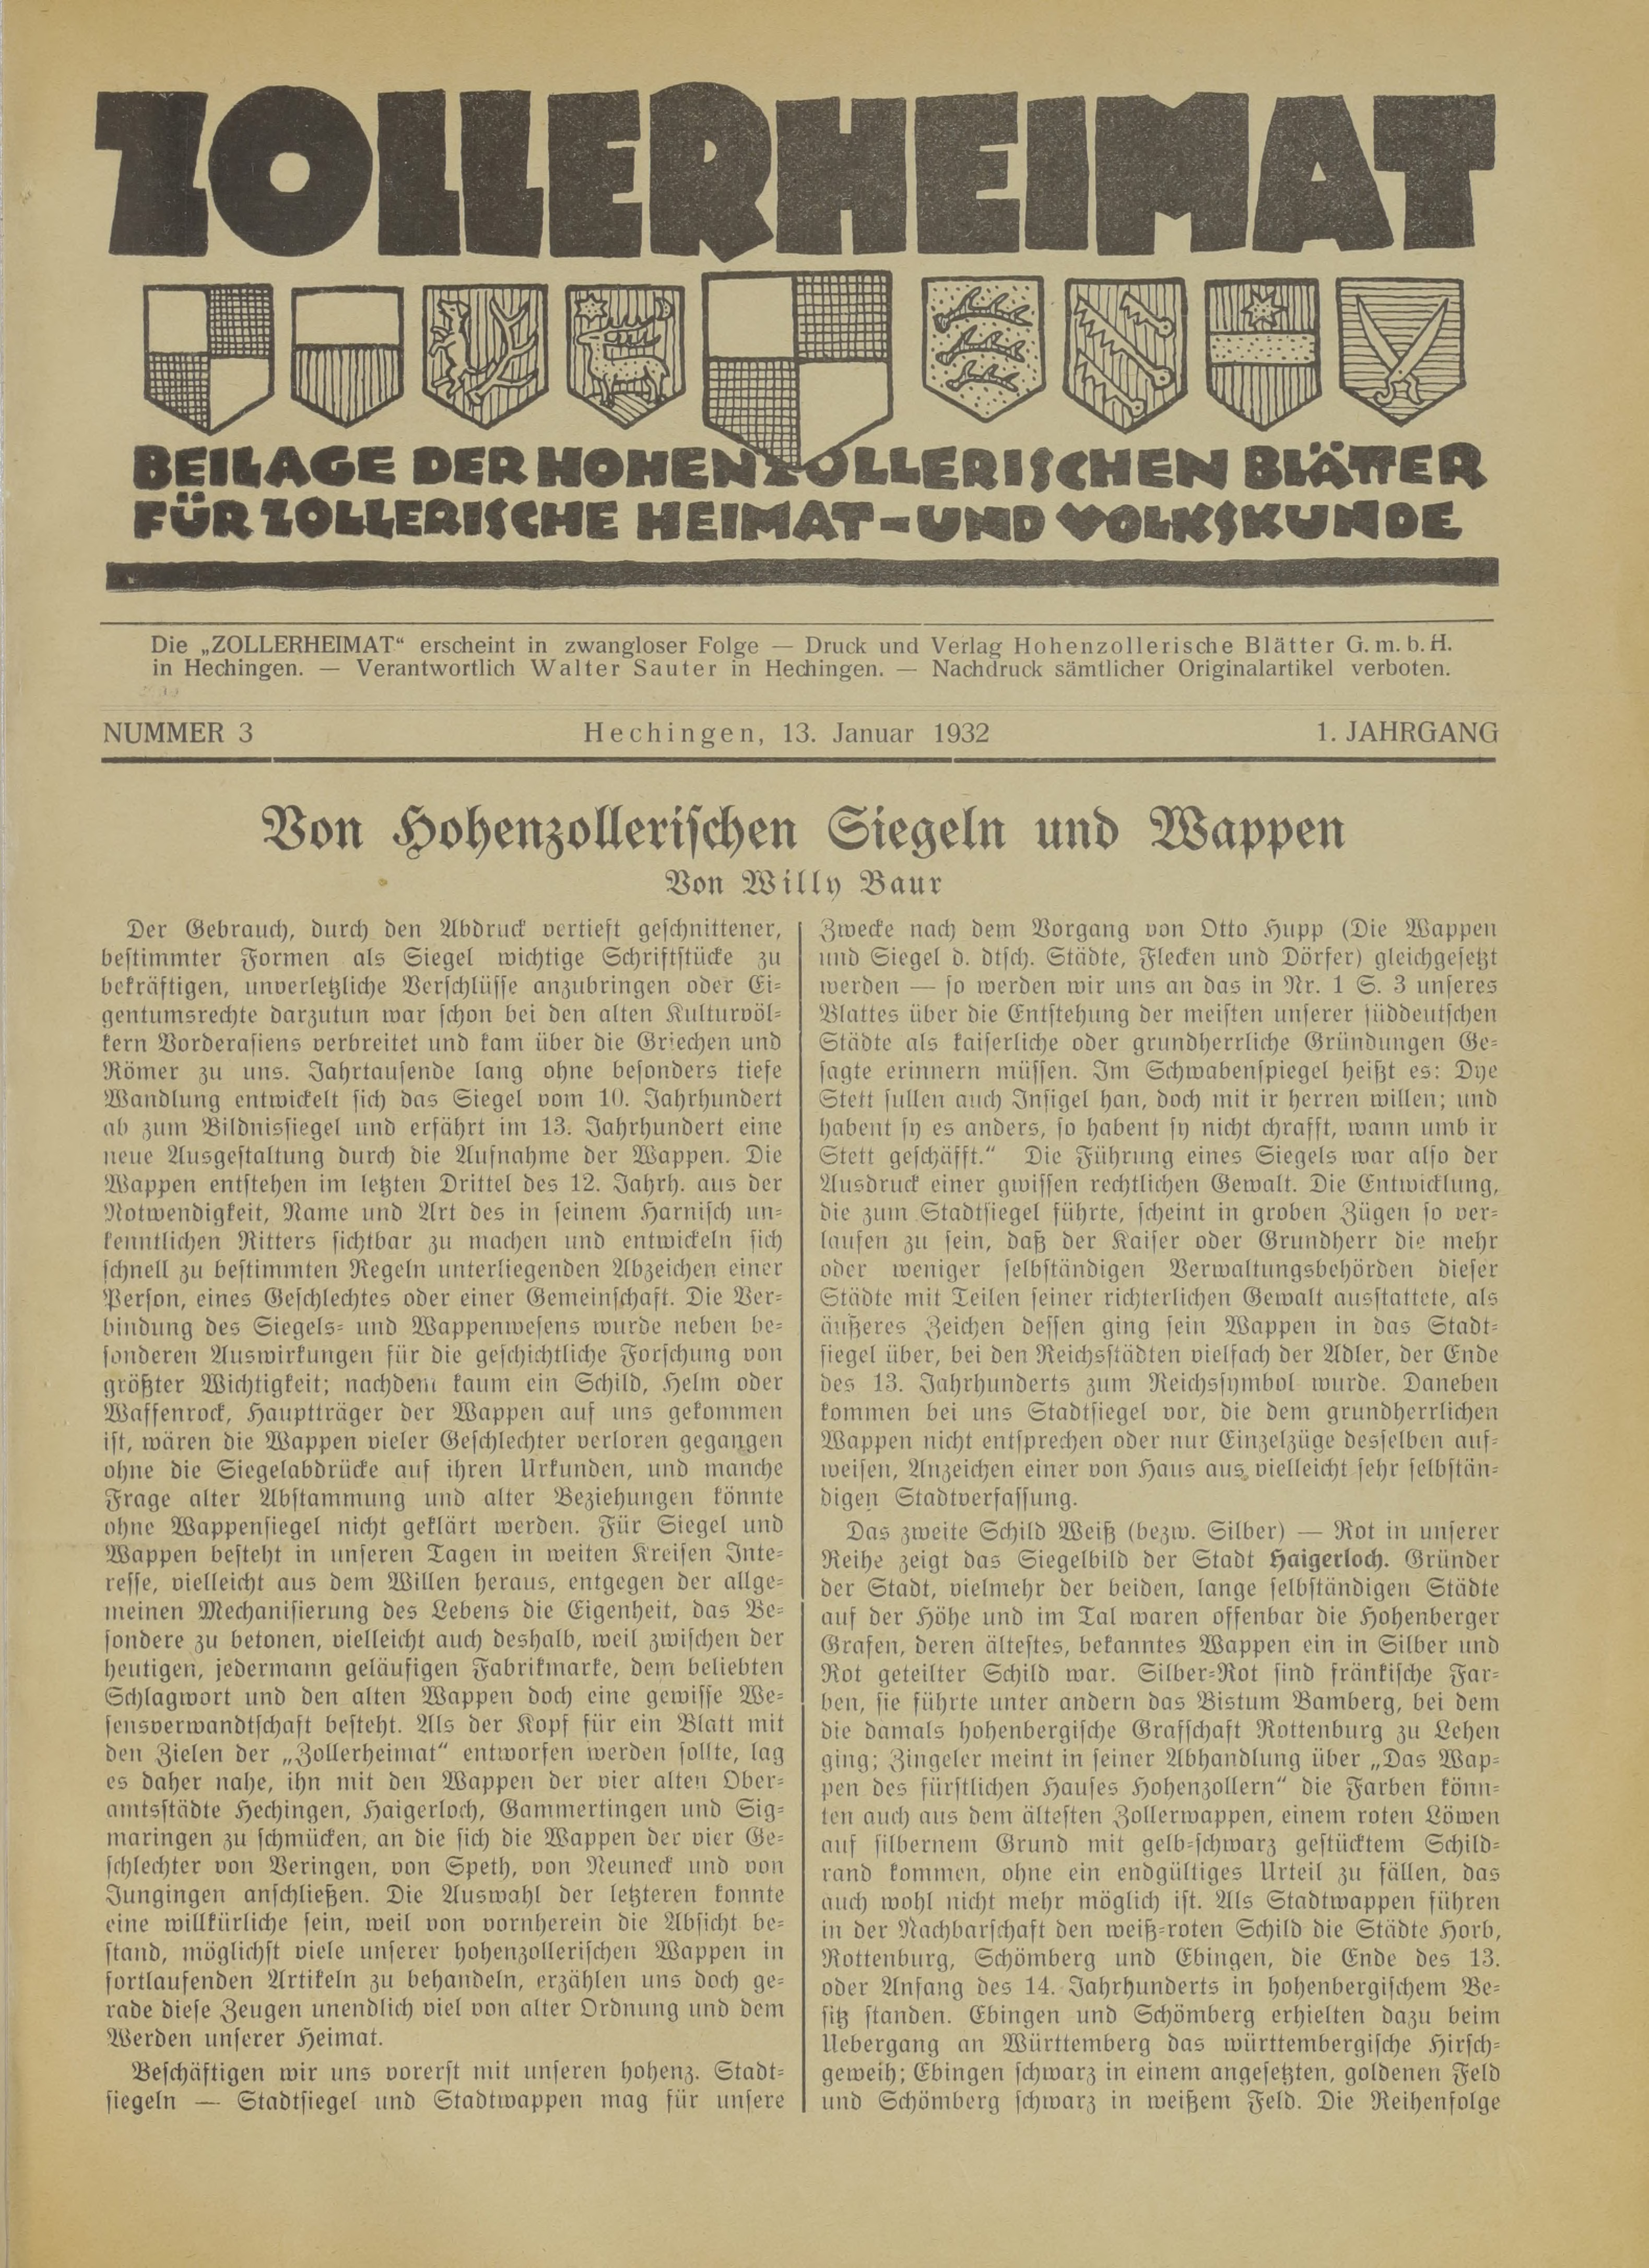                     Ansehen Bd. 1 Nr. 3 (1932): Zollerheimat
                